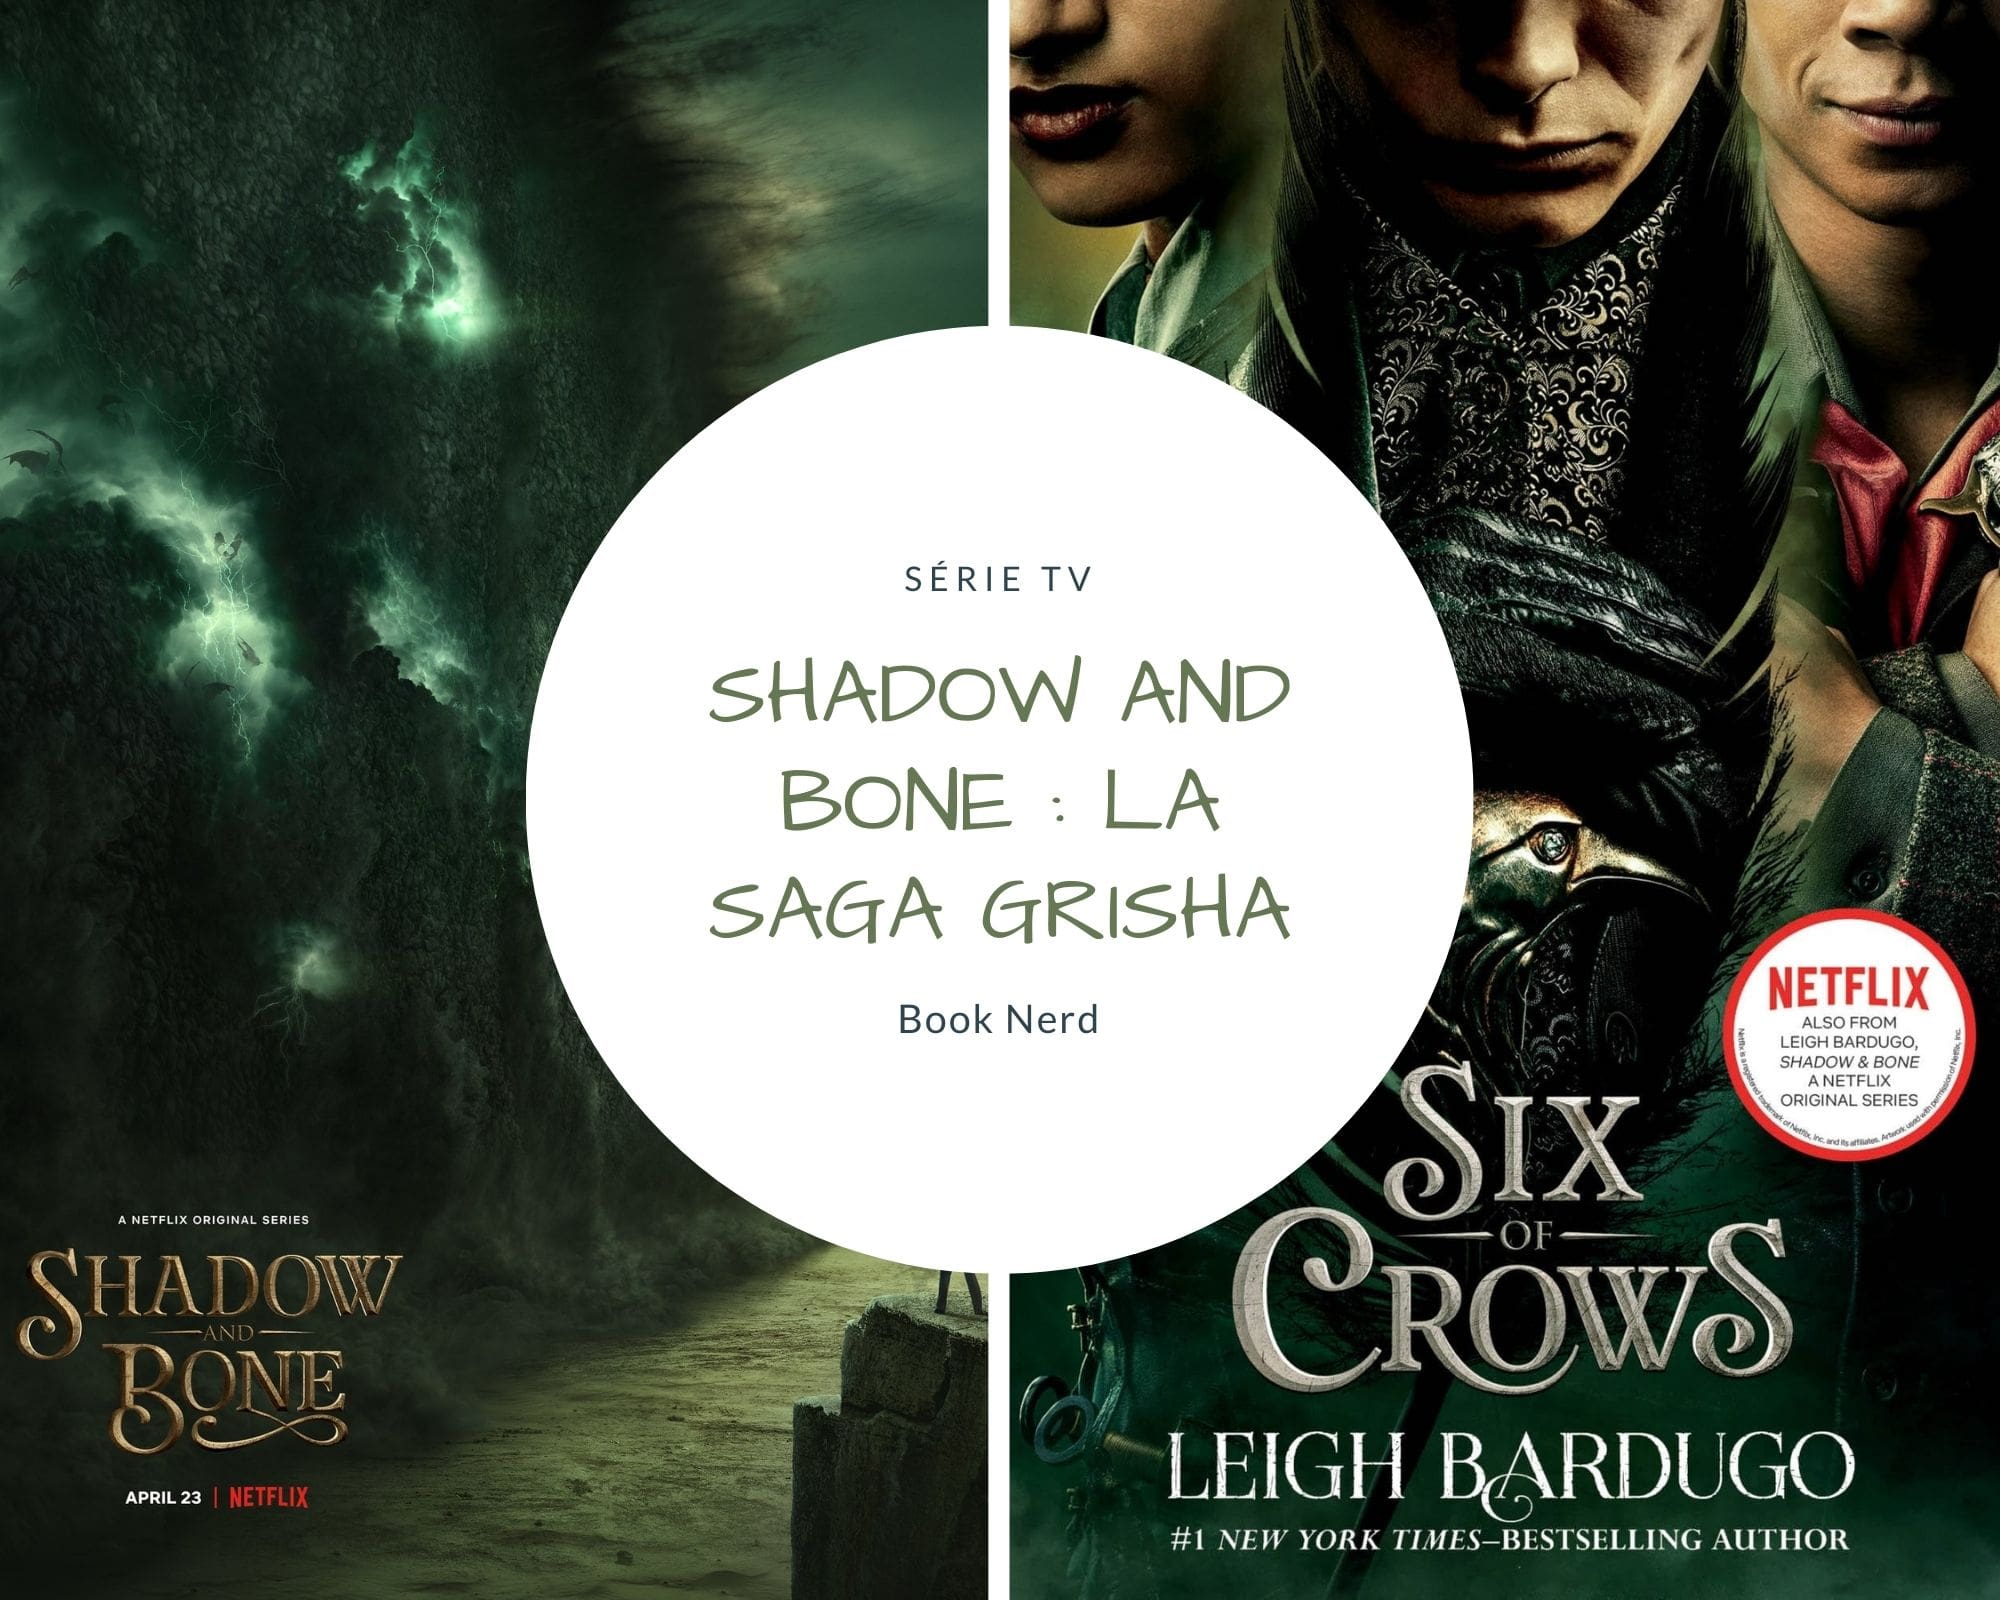 Shadow and Bone - La Saga Grisha - Que penser de la série Netflix quand on a lu les livres